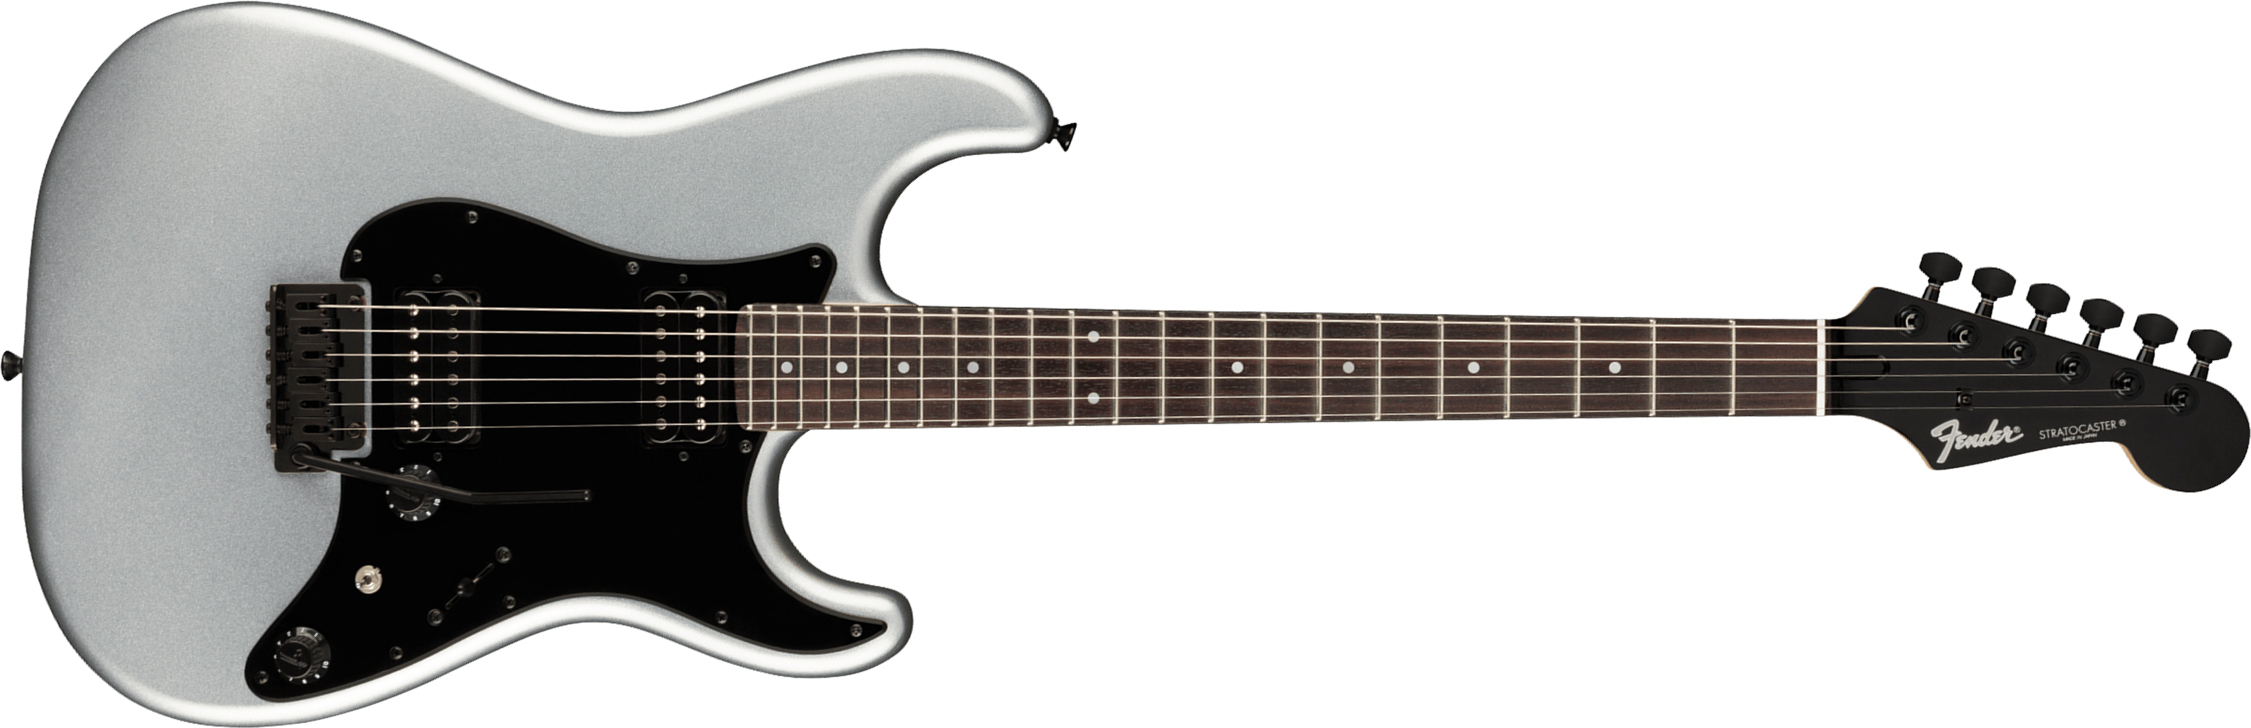 Fender Strat Boxer Hh Jap Trem Rw +housse - Inca Silver - Elektrische gitaar in Str-vorm - Main picture